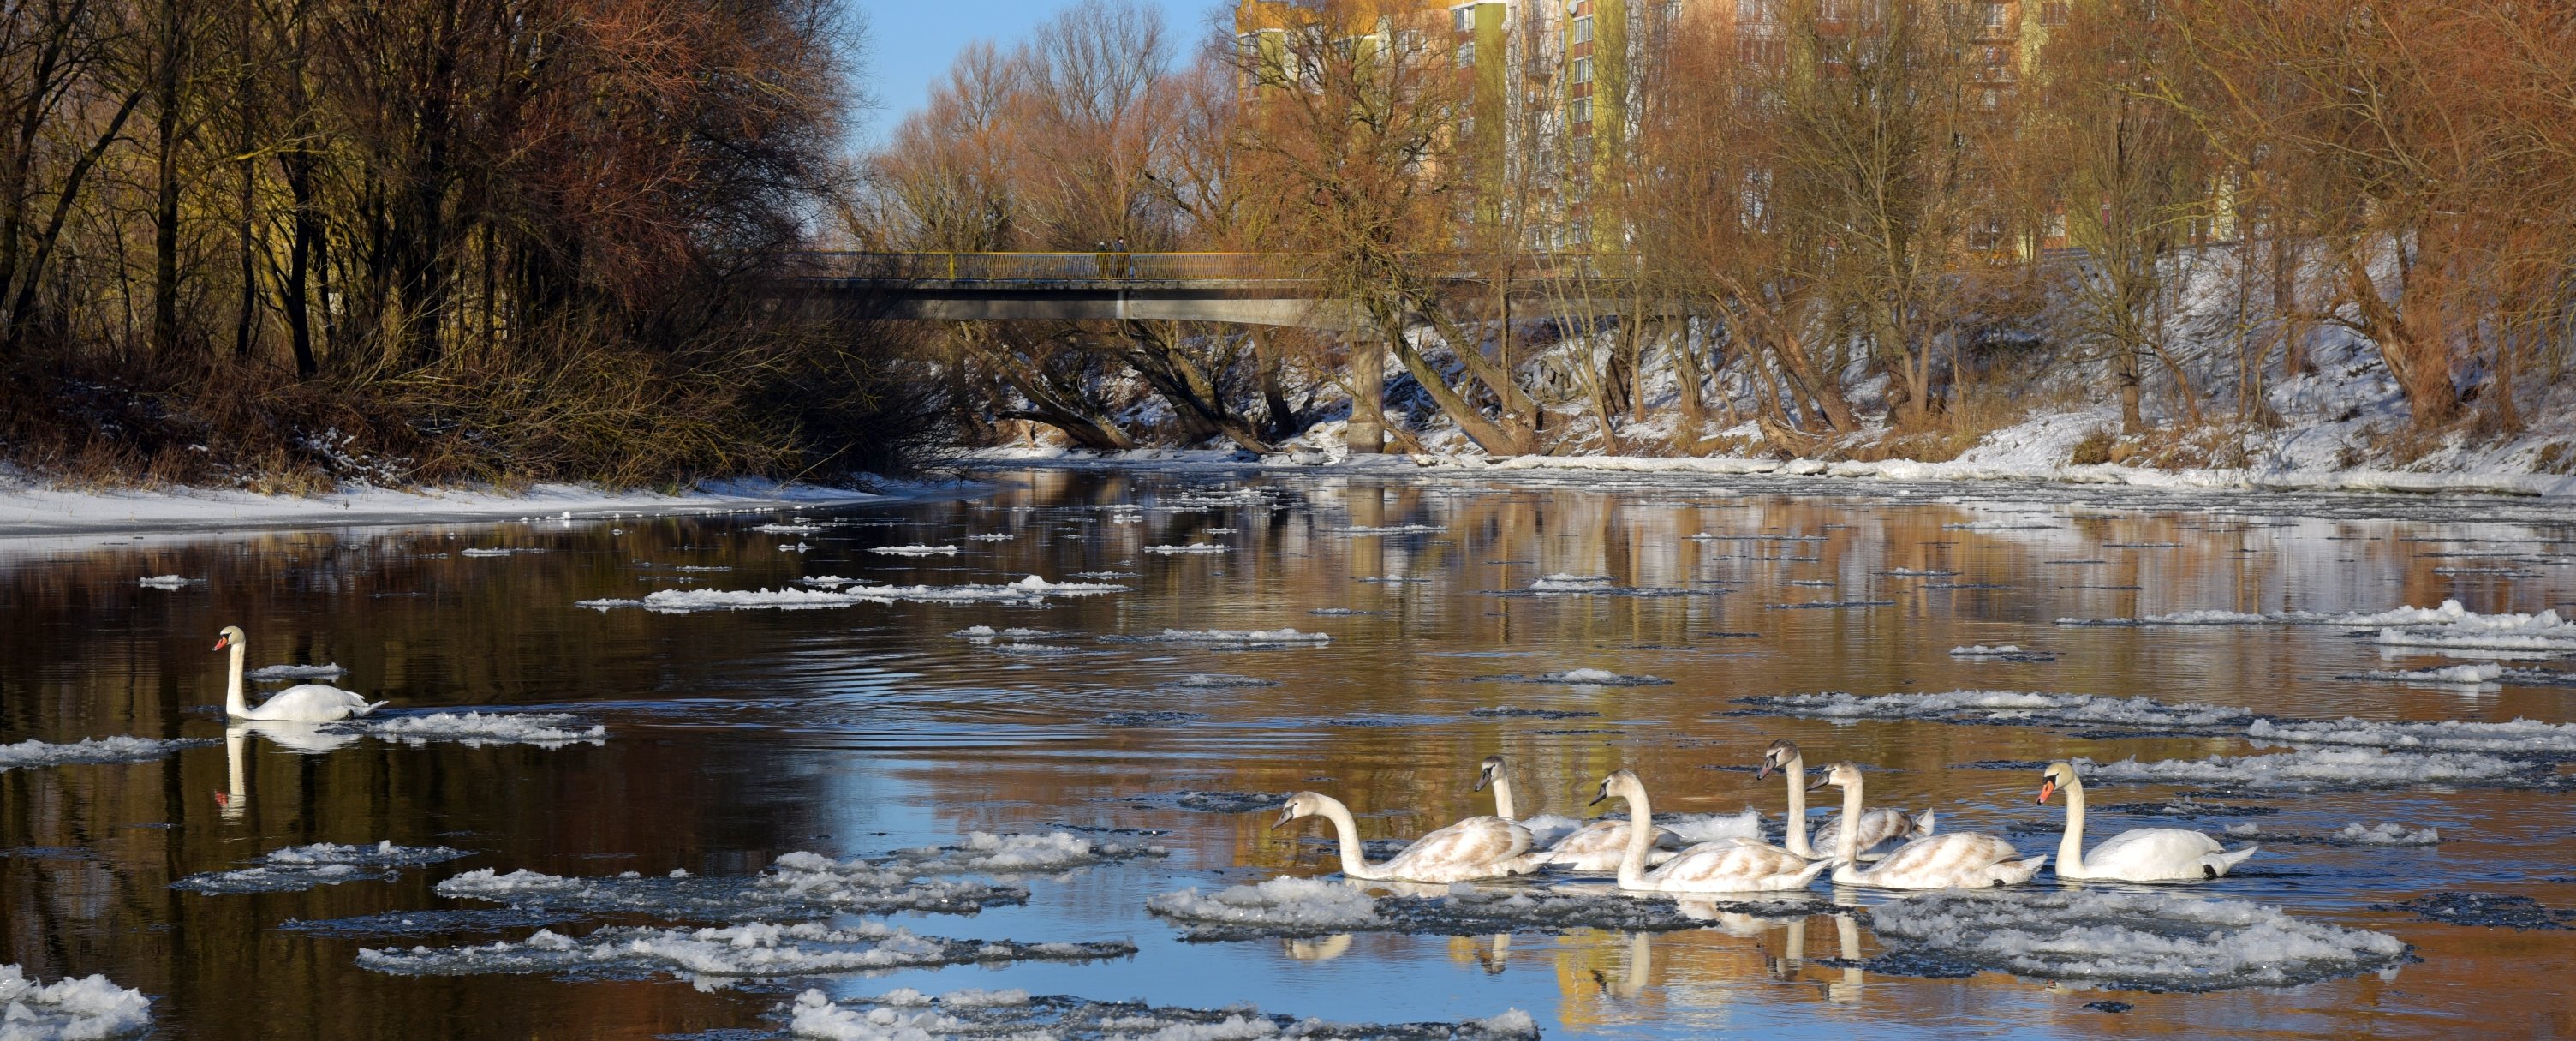 Чи відповідає екологічним нормам річка Стир, що на Рівненщині, перевірили фахівці